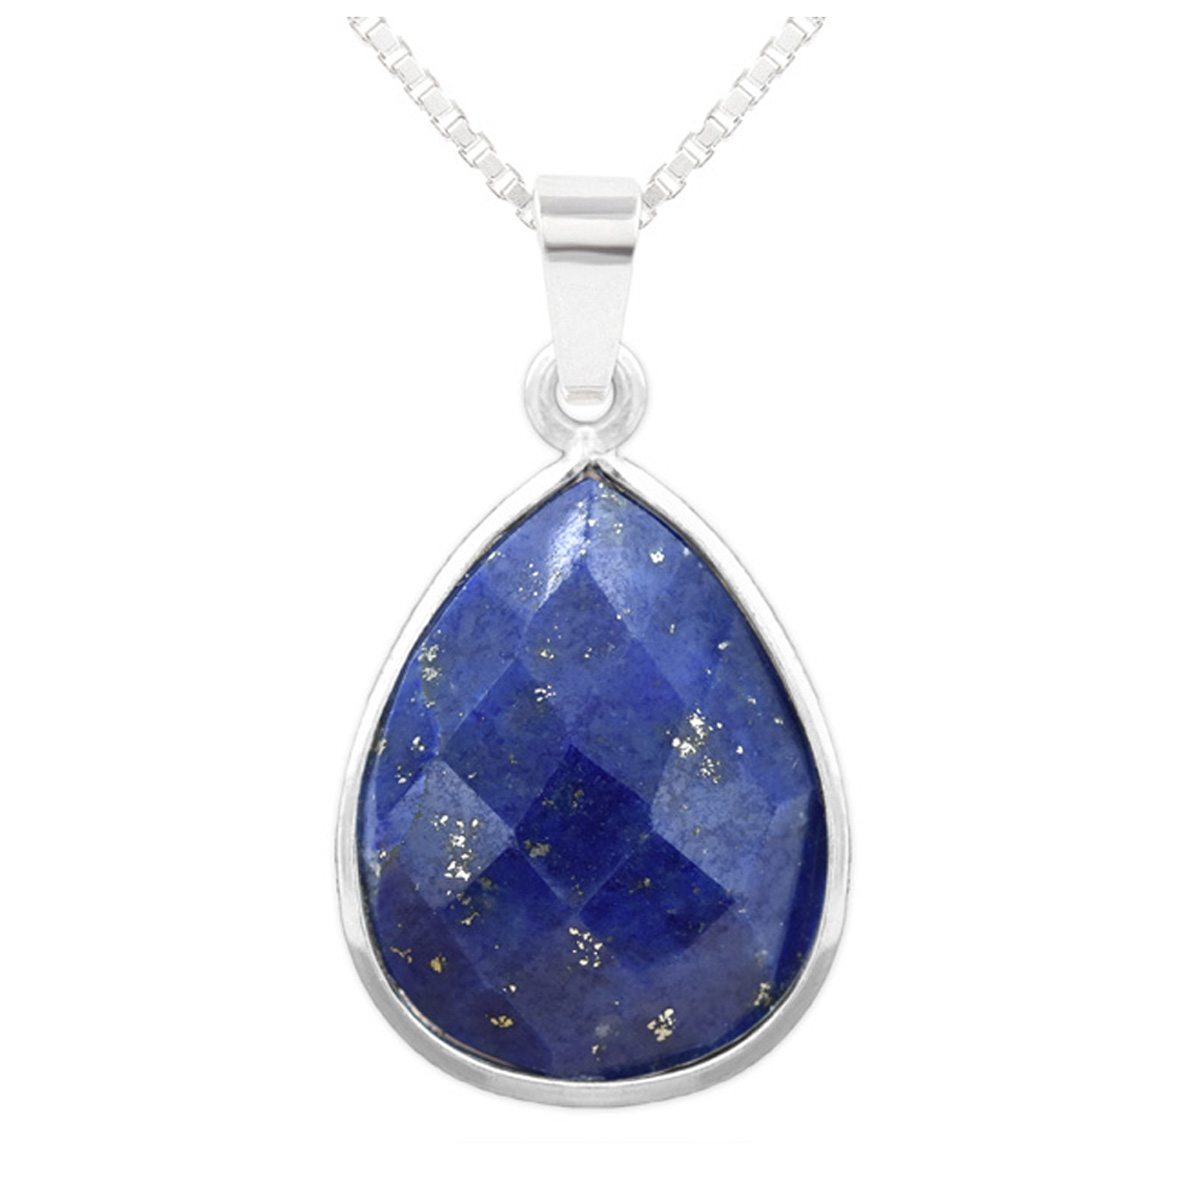 Collier argent artisanal \'Mineralia\' lapis lazuli argenté - 18x14 mm - [R1017]